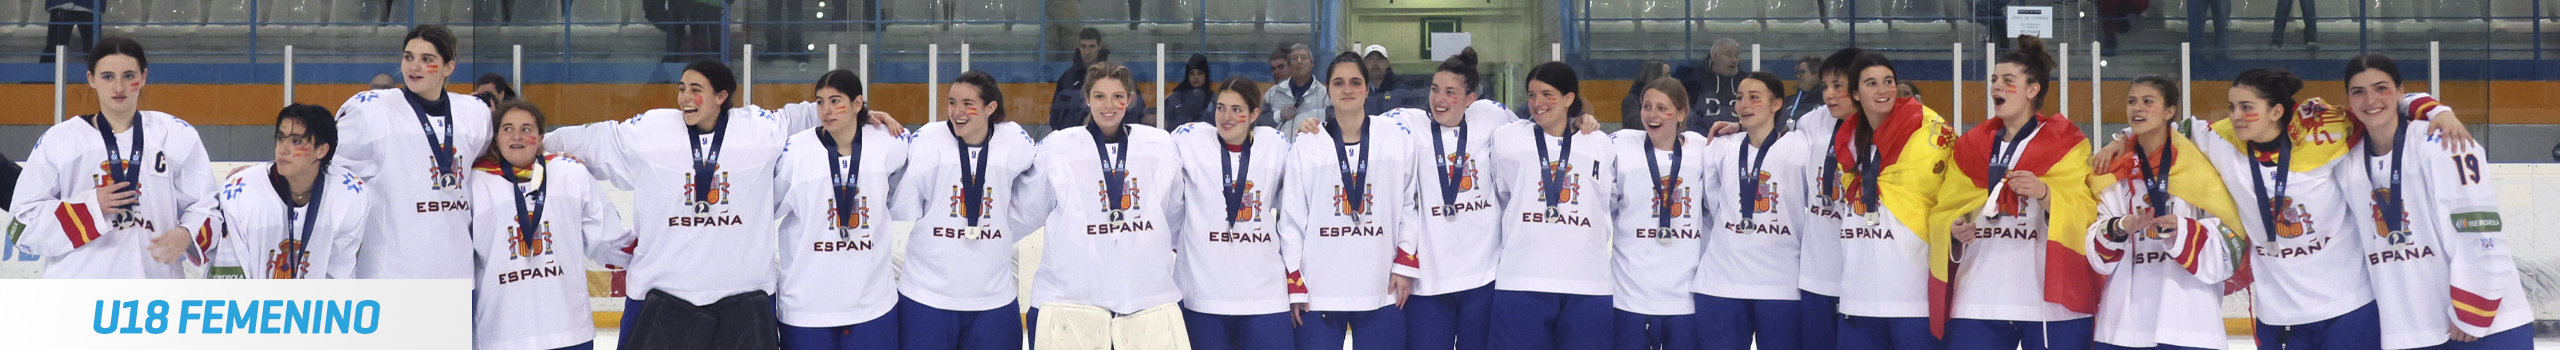 hockey hielo, Hockey Hielo: Selecciones Nacionales, Real Federación Española Deportes de Hielo